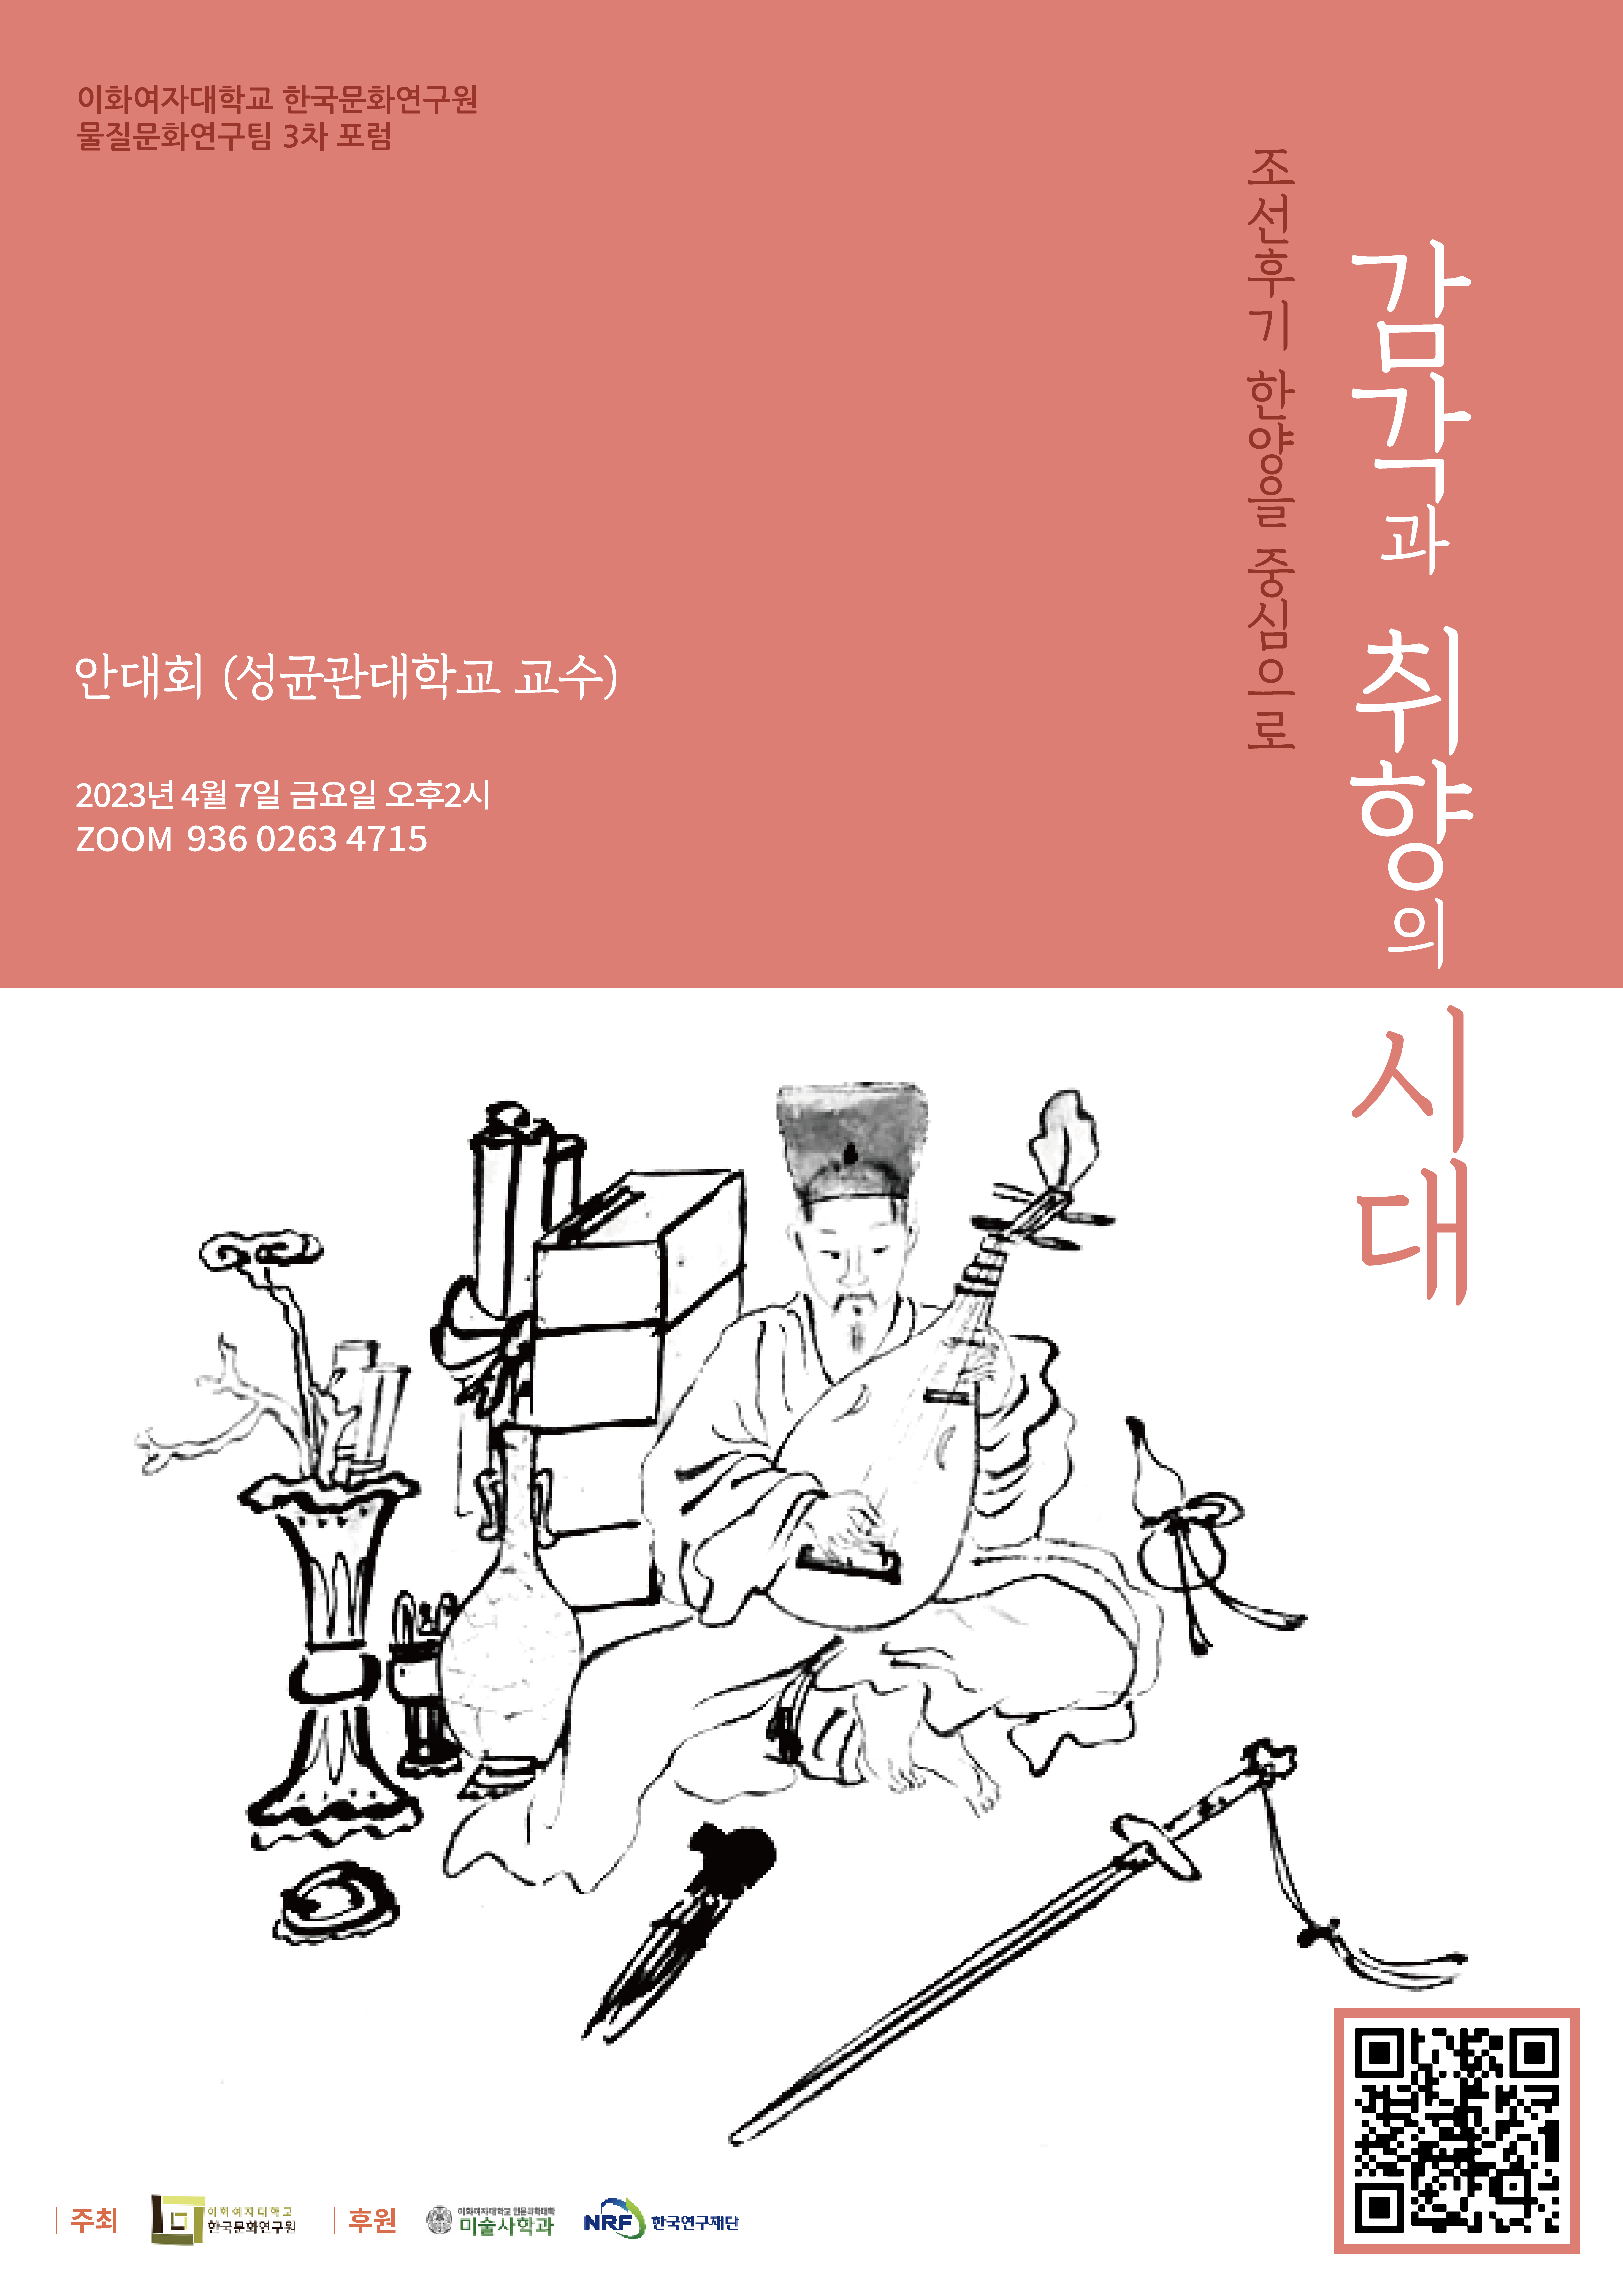 한국문화연구원 물질문화연구팀 포럼 포스터